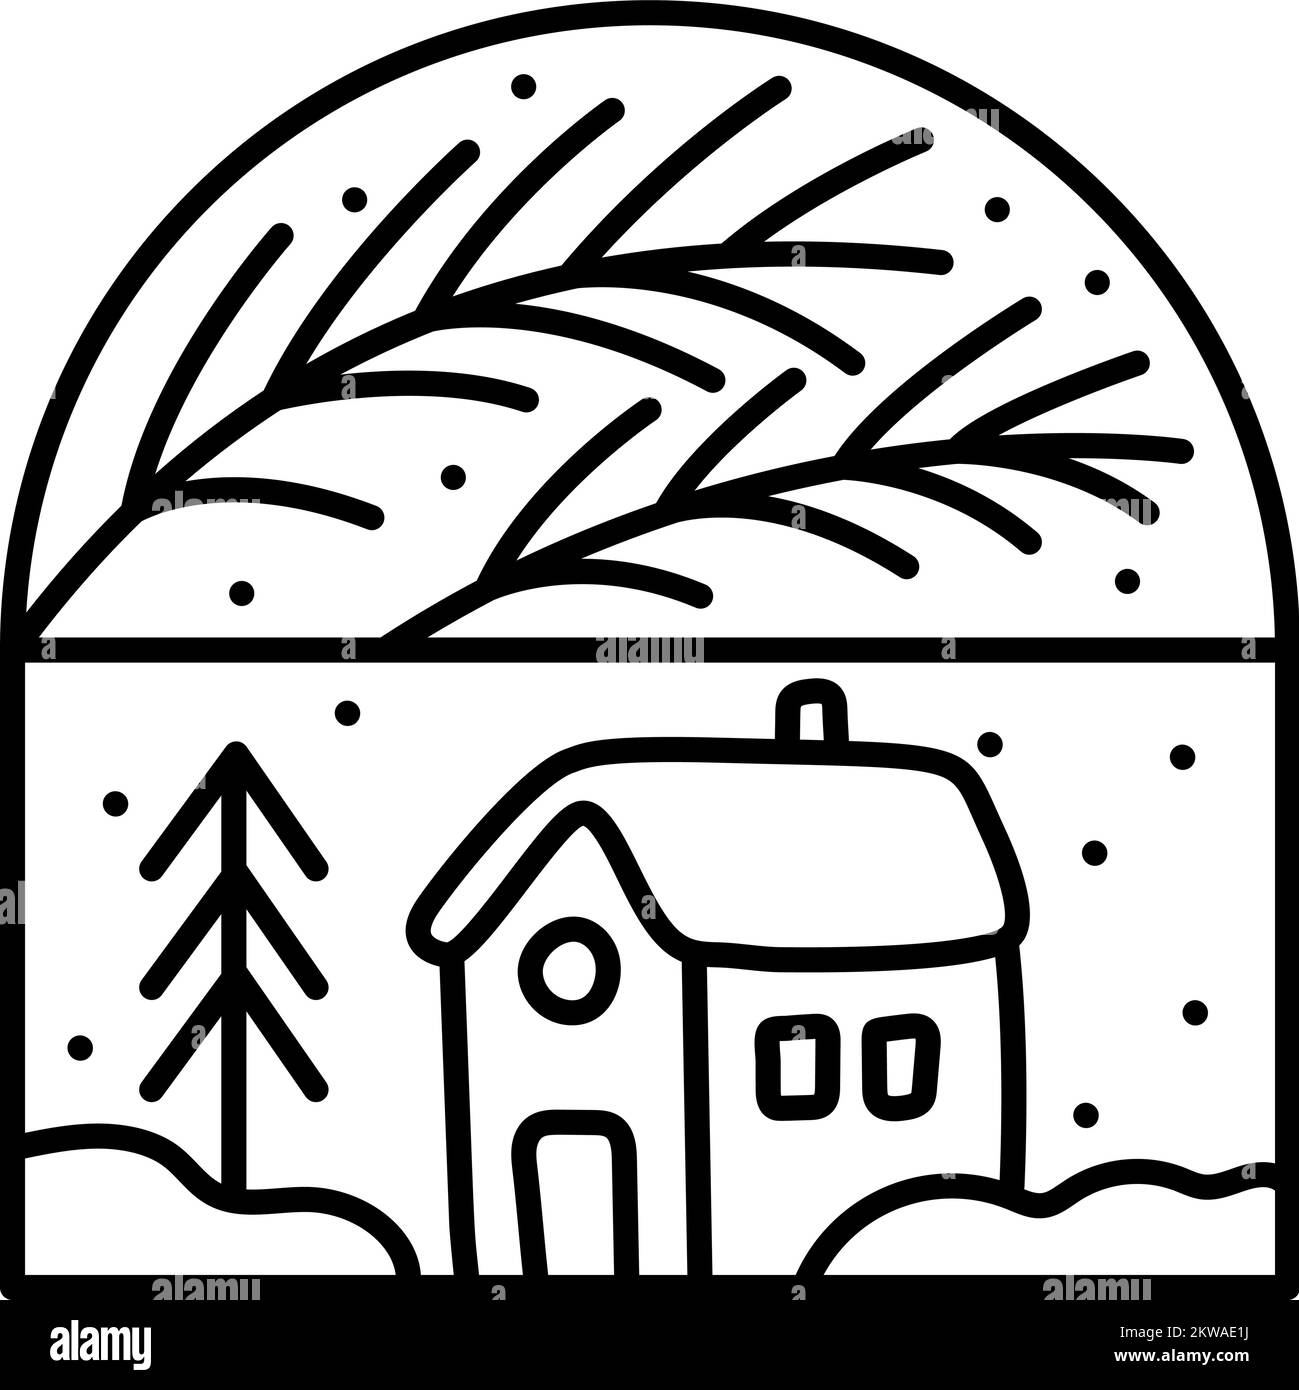 Navidad composición ramas y casa de Adviento. Logotipo de constructor vectorial de invierno dibujado a mano en marco semirredondo y rectángulos para tarjeta de felicitación Ilustración del Vector